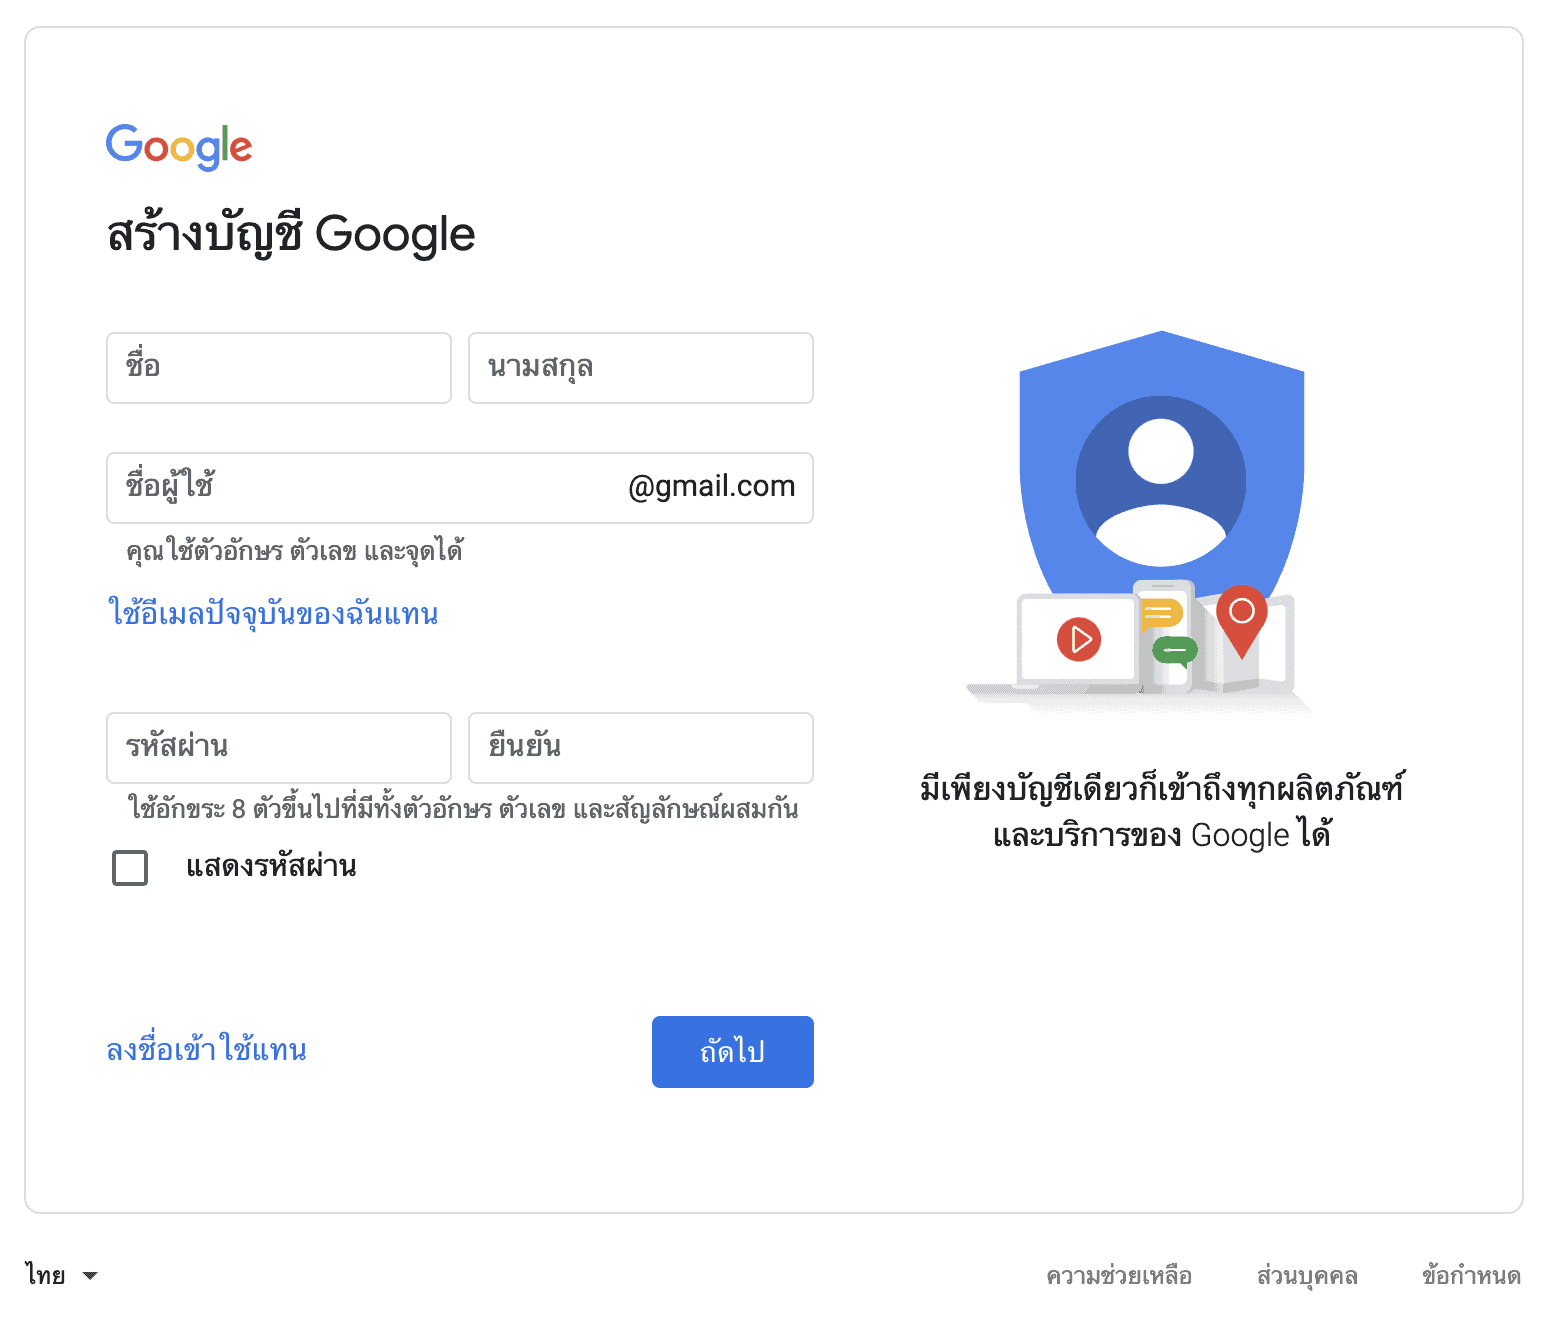 สอนวิธีสมัคร Gmail ฟรีใน 5 นาที พร้อมวิธีตั้งรหัสผ่านให้ปลอดภัย - Designil